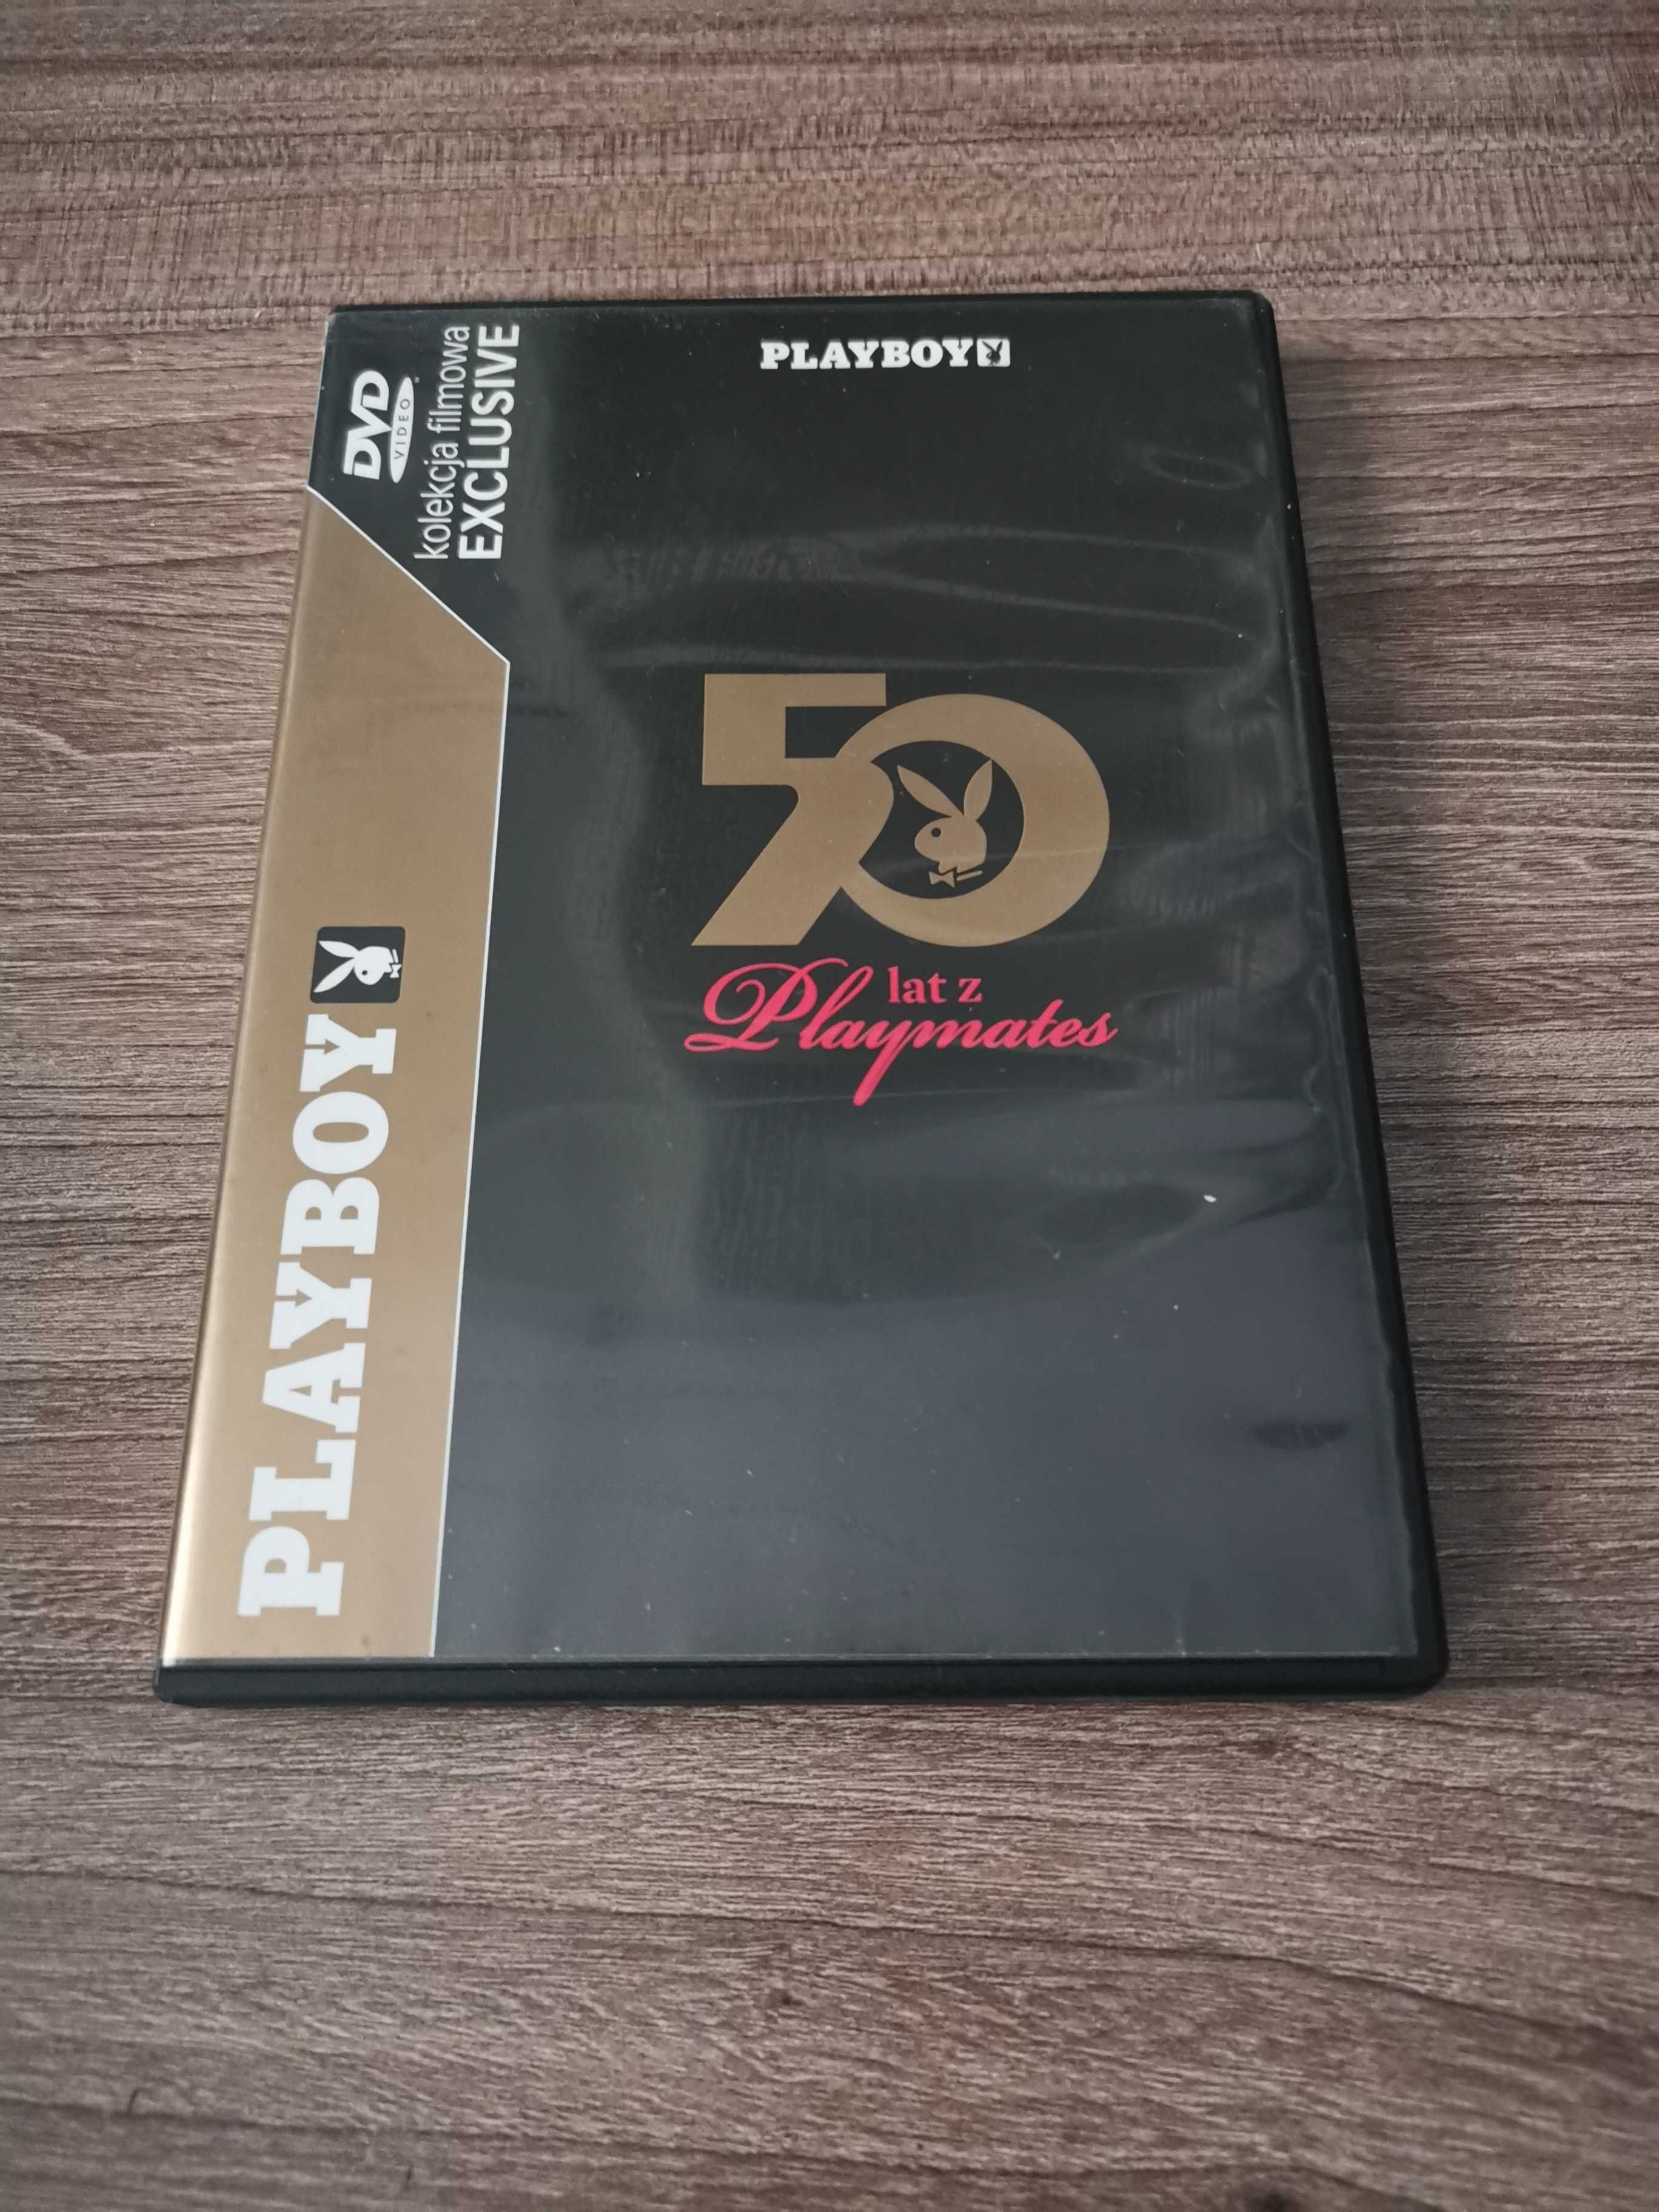 Płyta dvd: "Playboy 50 lat z playmates"